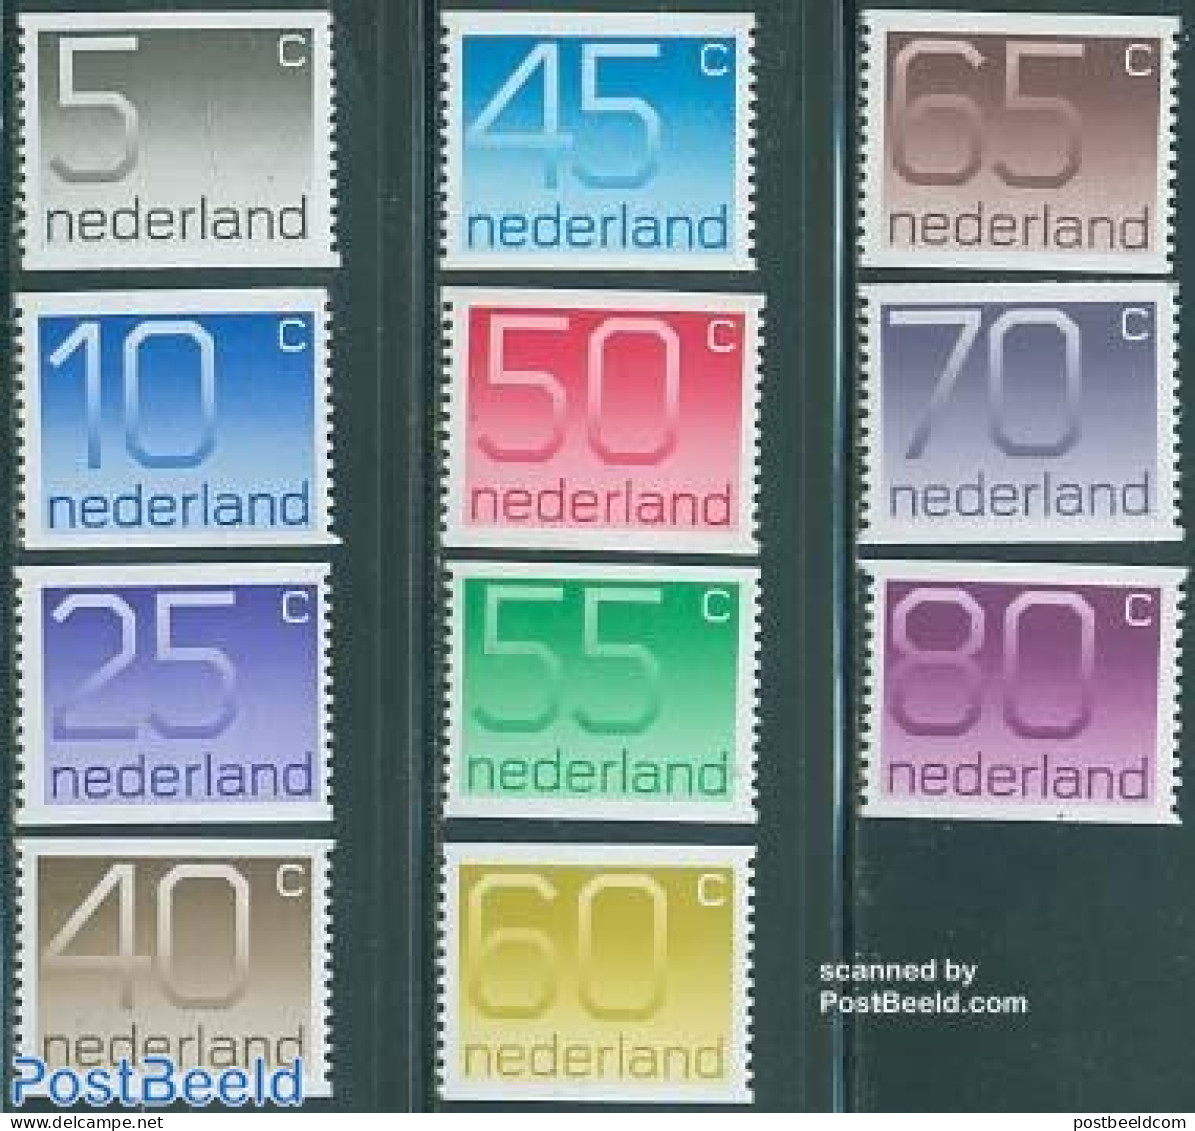 Netherlands 1976 Definitives, Coil Stamps 11v, Mint NH - Nuovi